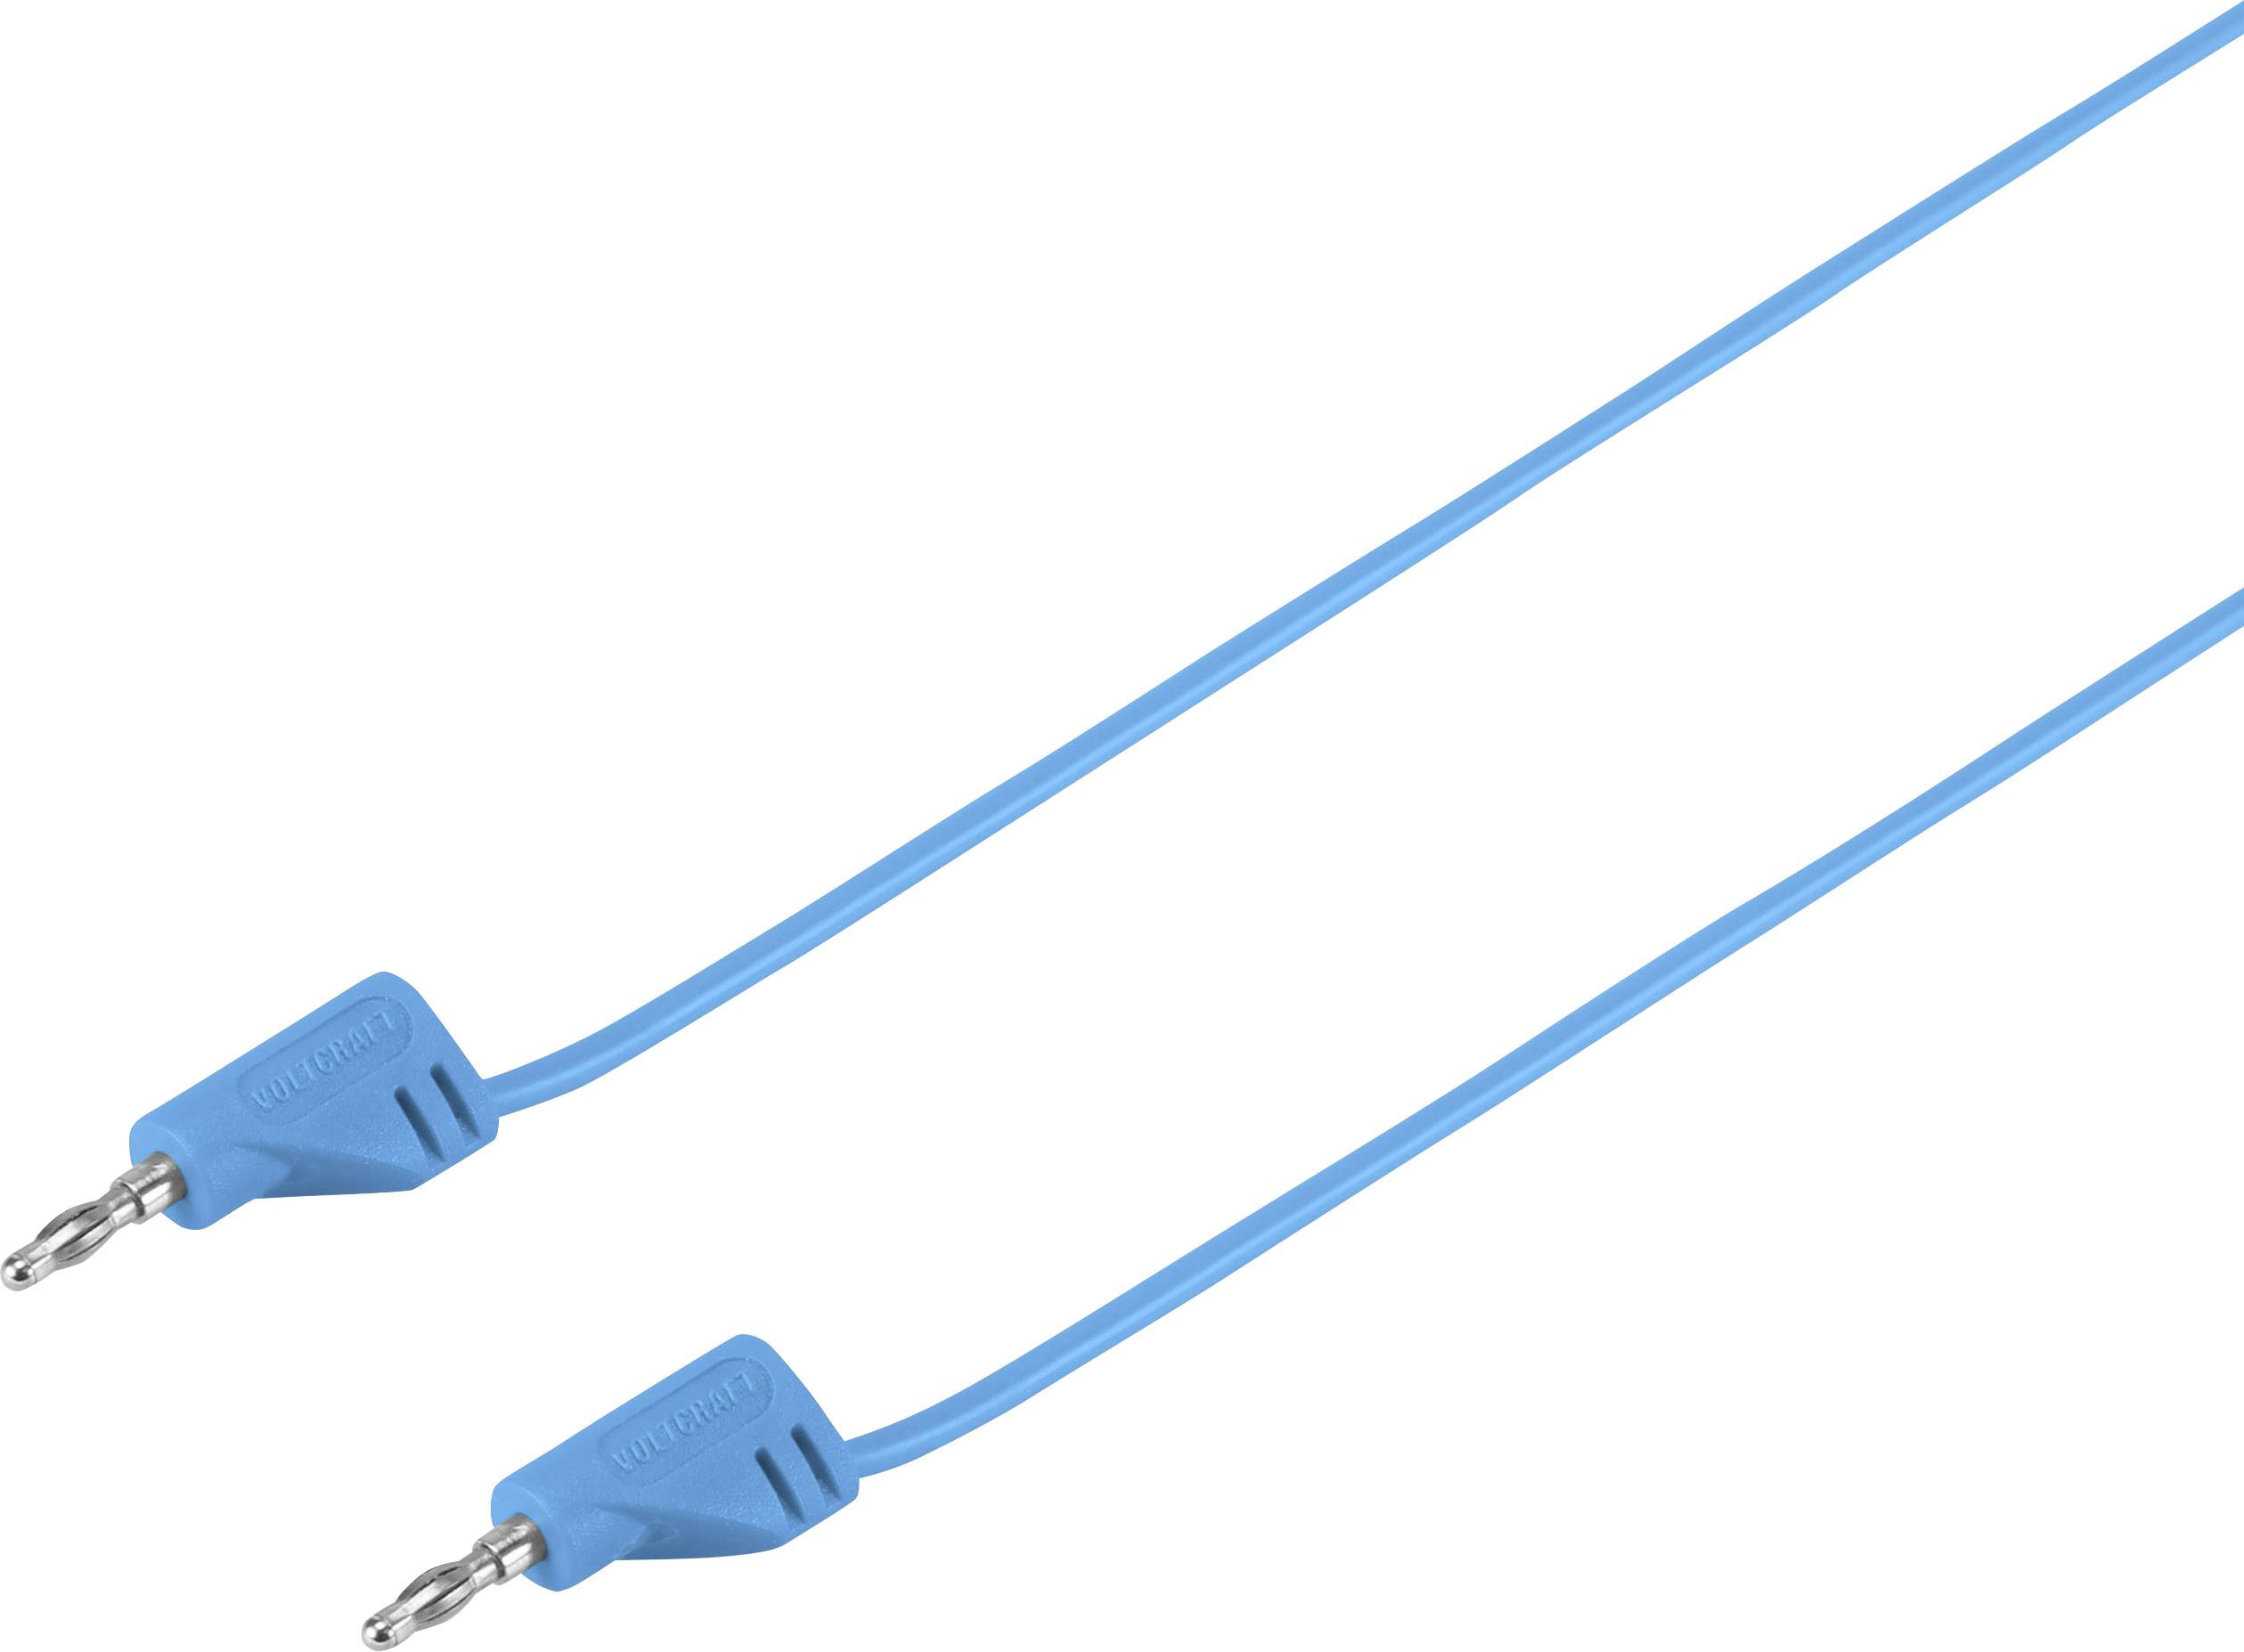 VOLTCRAFT Hochflexible Messleitung [Lamellenstecker 2 mm - Lamellenstecker 2 mm] 0.6 m Blau MSB-200